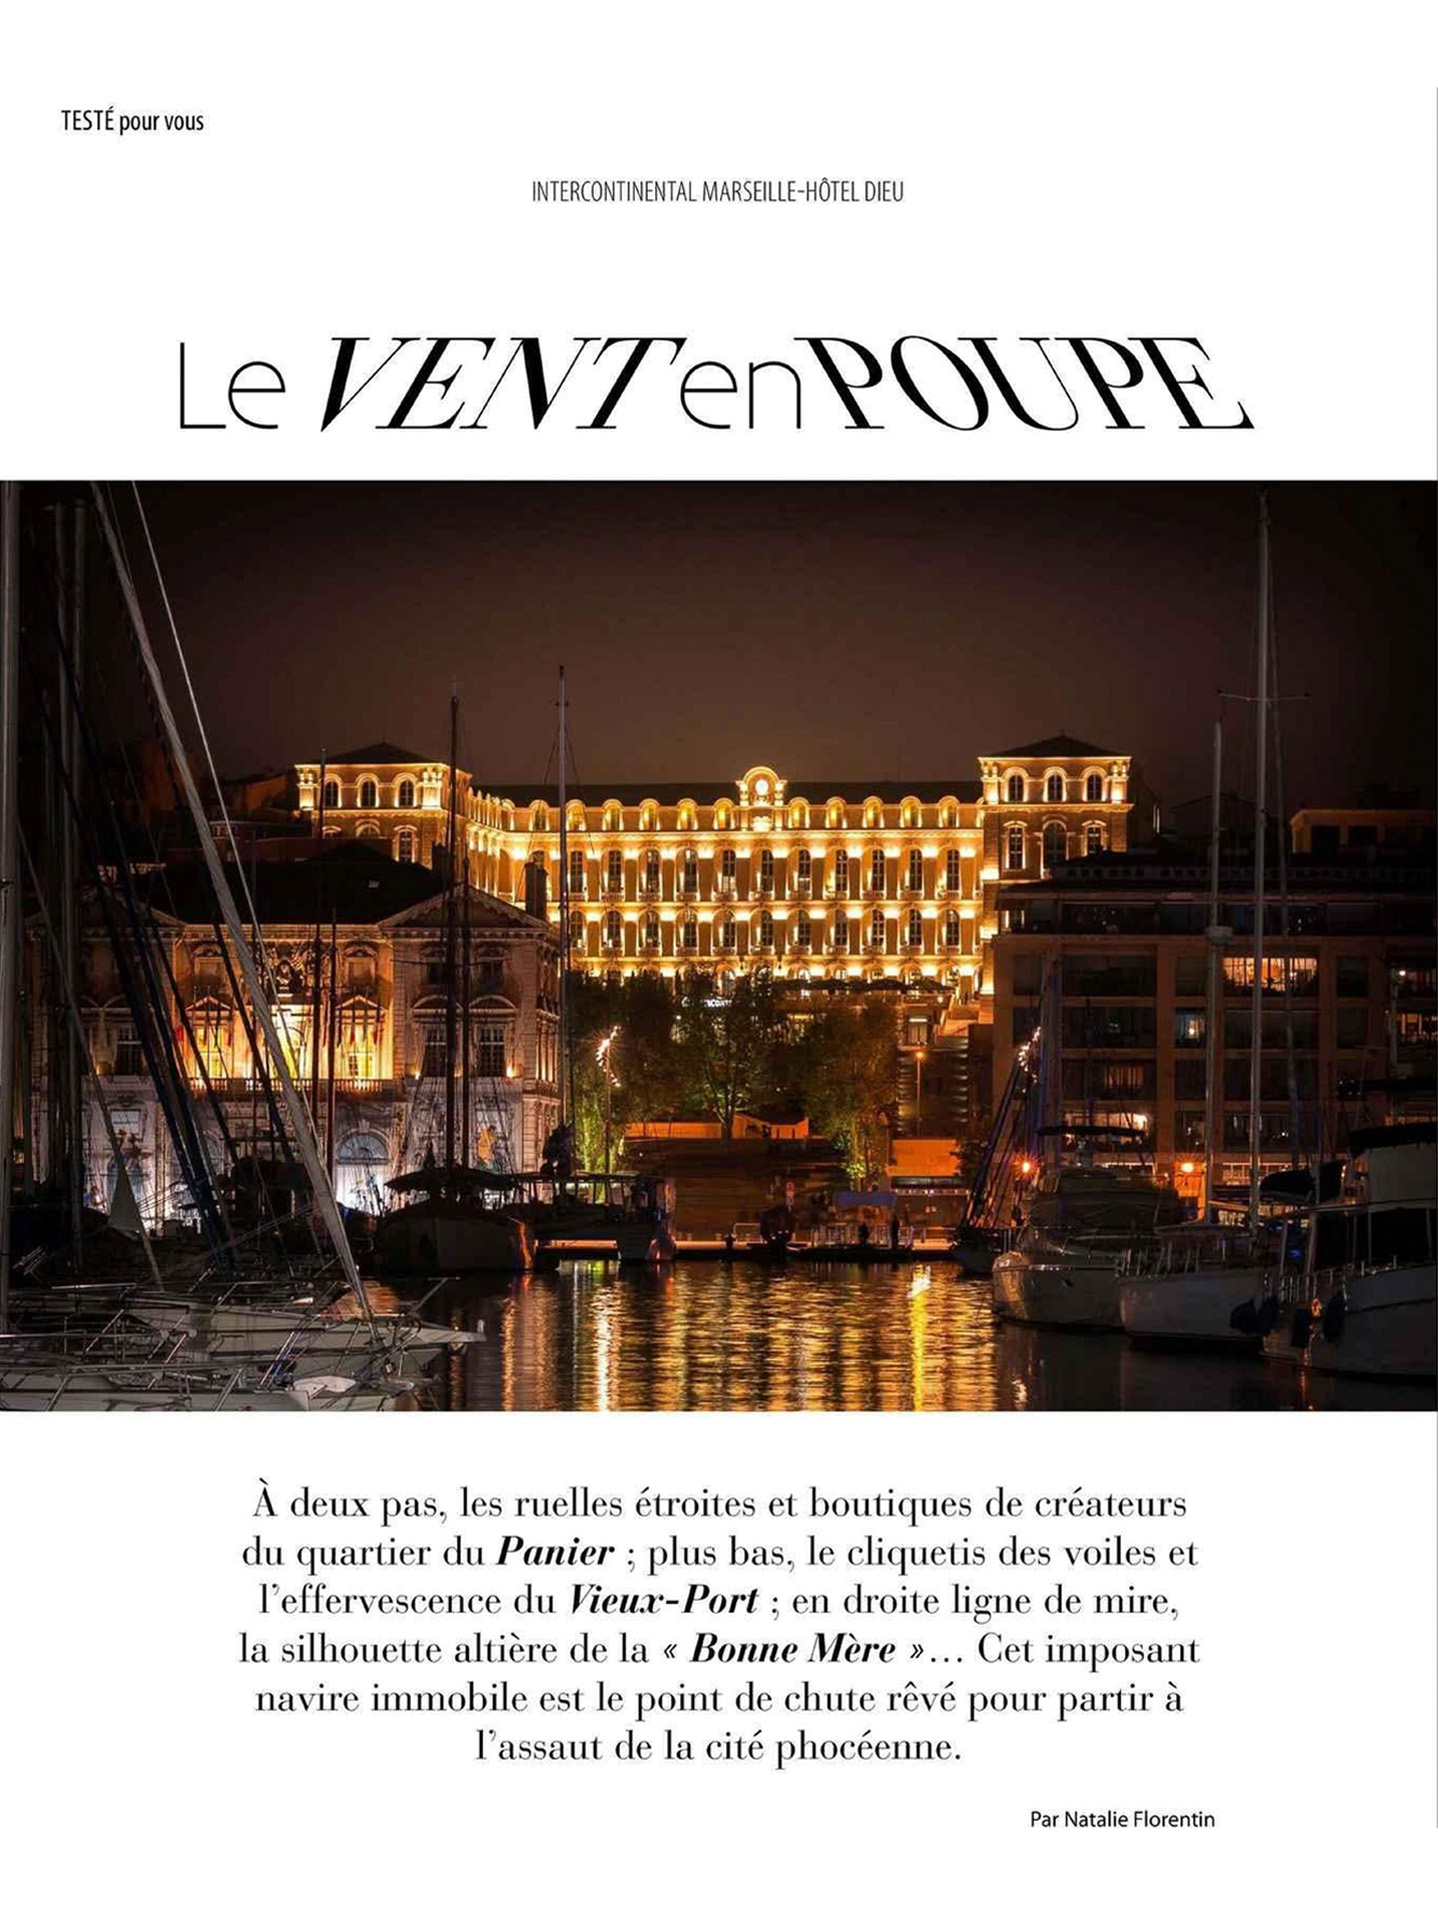 Article sur InterContinental Marseille hôtel dieu, studio jean-philippe nuel, notre dame de la garde, hôtel de luxe 5 étoiles, architecture d'intérieur, hôtellerie de luxe, décoration d'intérieur